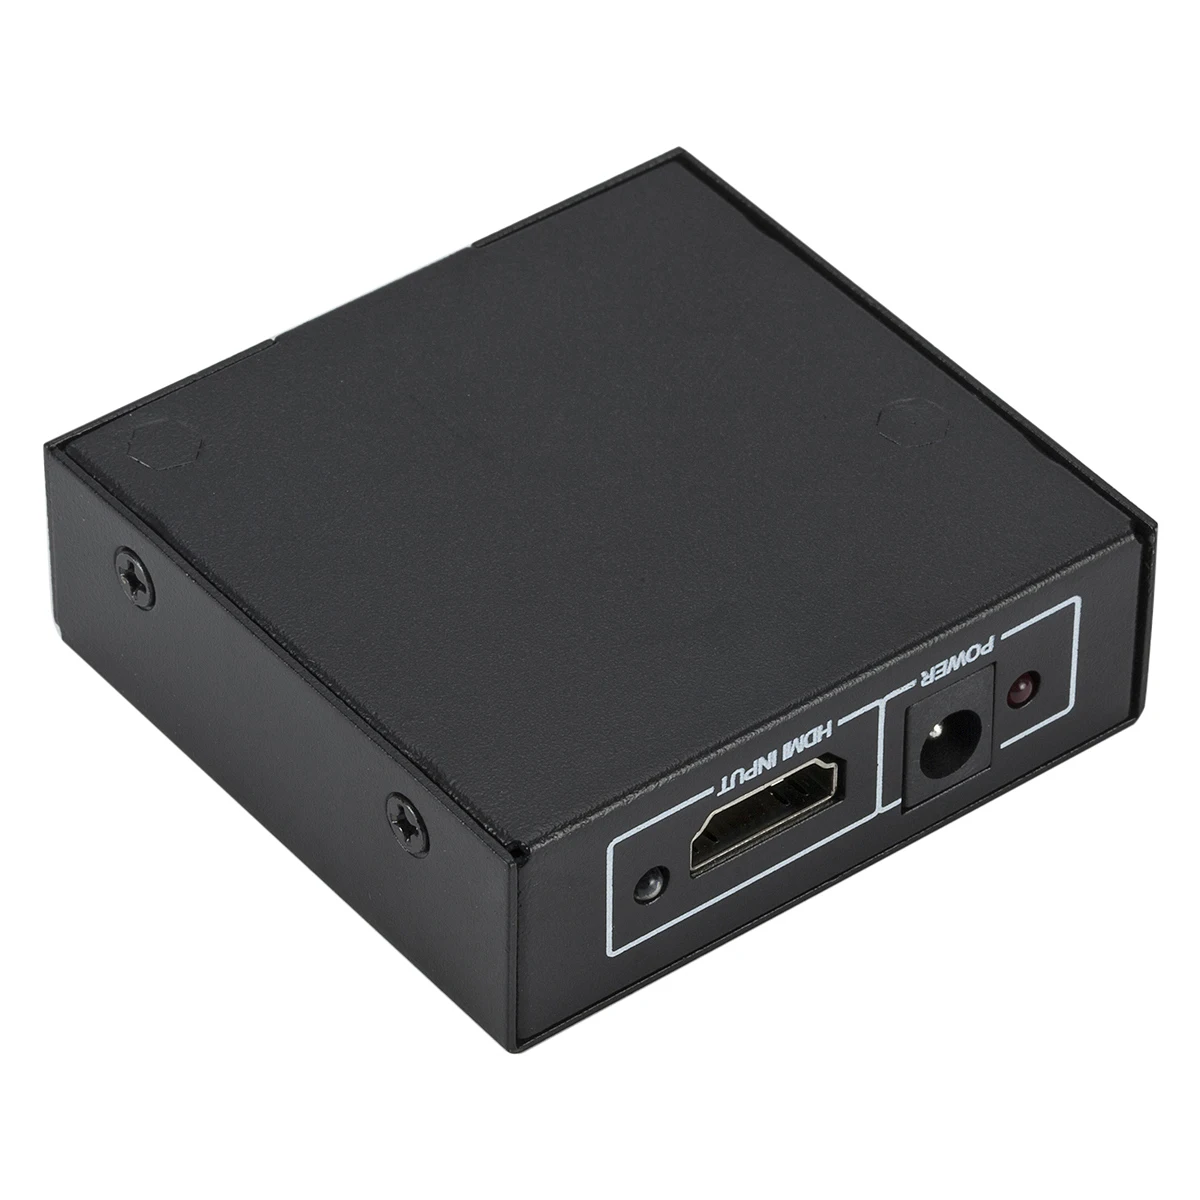 HDMI 4 K Splitter Full HD видео с разрешением 1080 p HDMI коммутатора коммутатор коробка концентратор 1 в 2 из двойной усилитель дисплея для HDTV DVD Xbox PS3/4/5